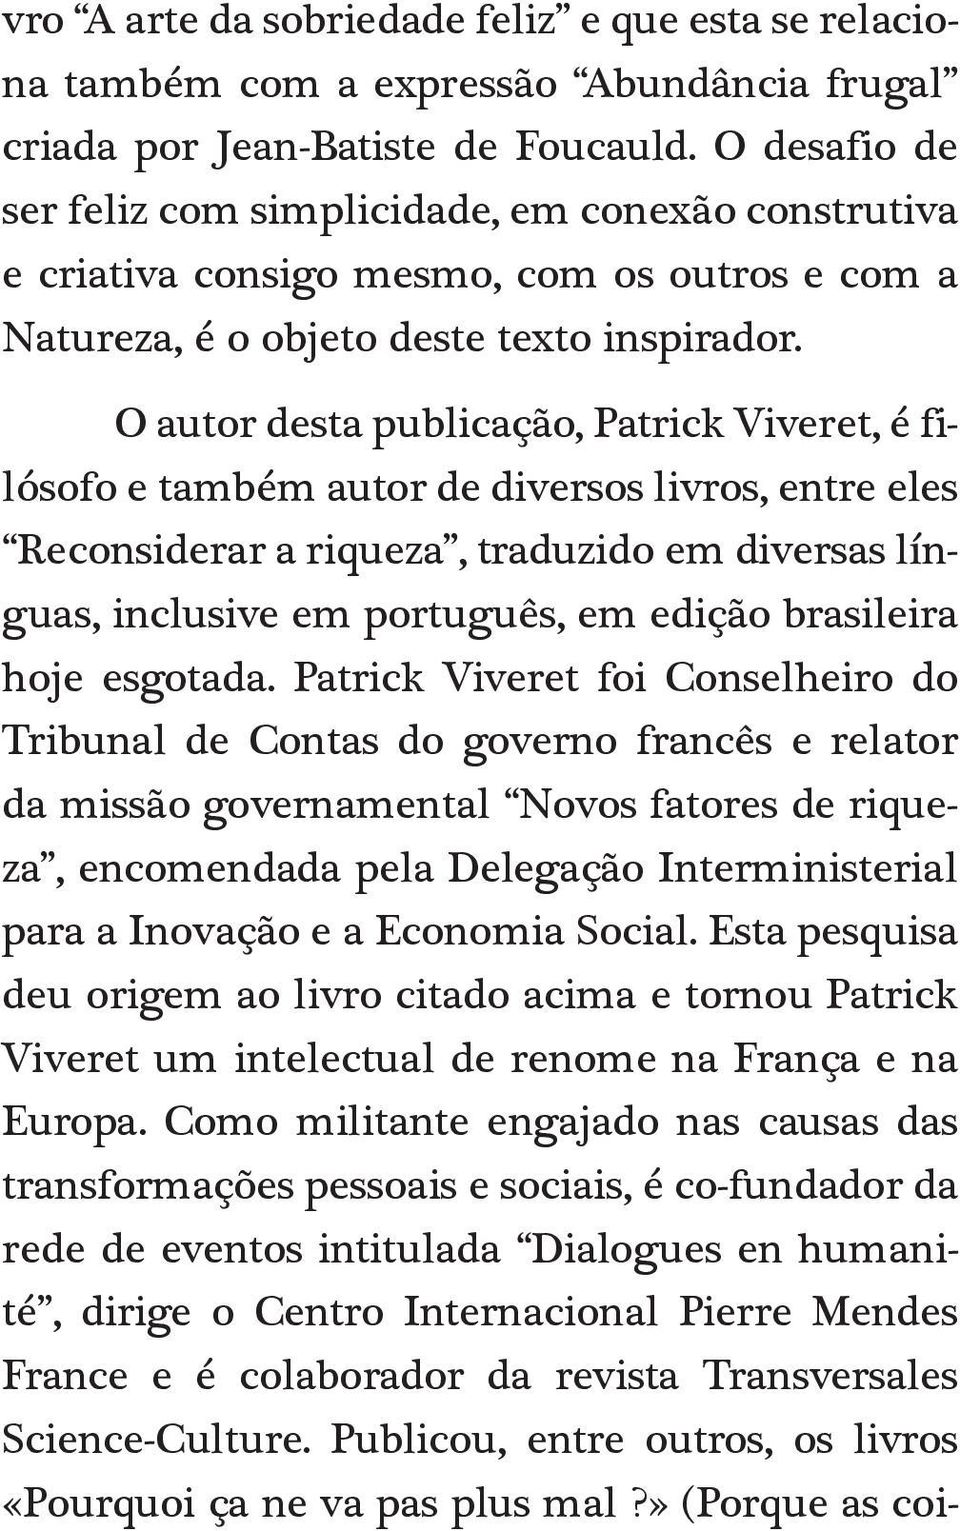 O autor desta publicação, Patrick Viveret, é filósofo e também autor de diversos livros, entre eles Reconsiderar a riqueza, traduzido em diversas línguas, inclusive em português, em edição brasileira